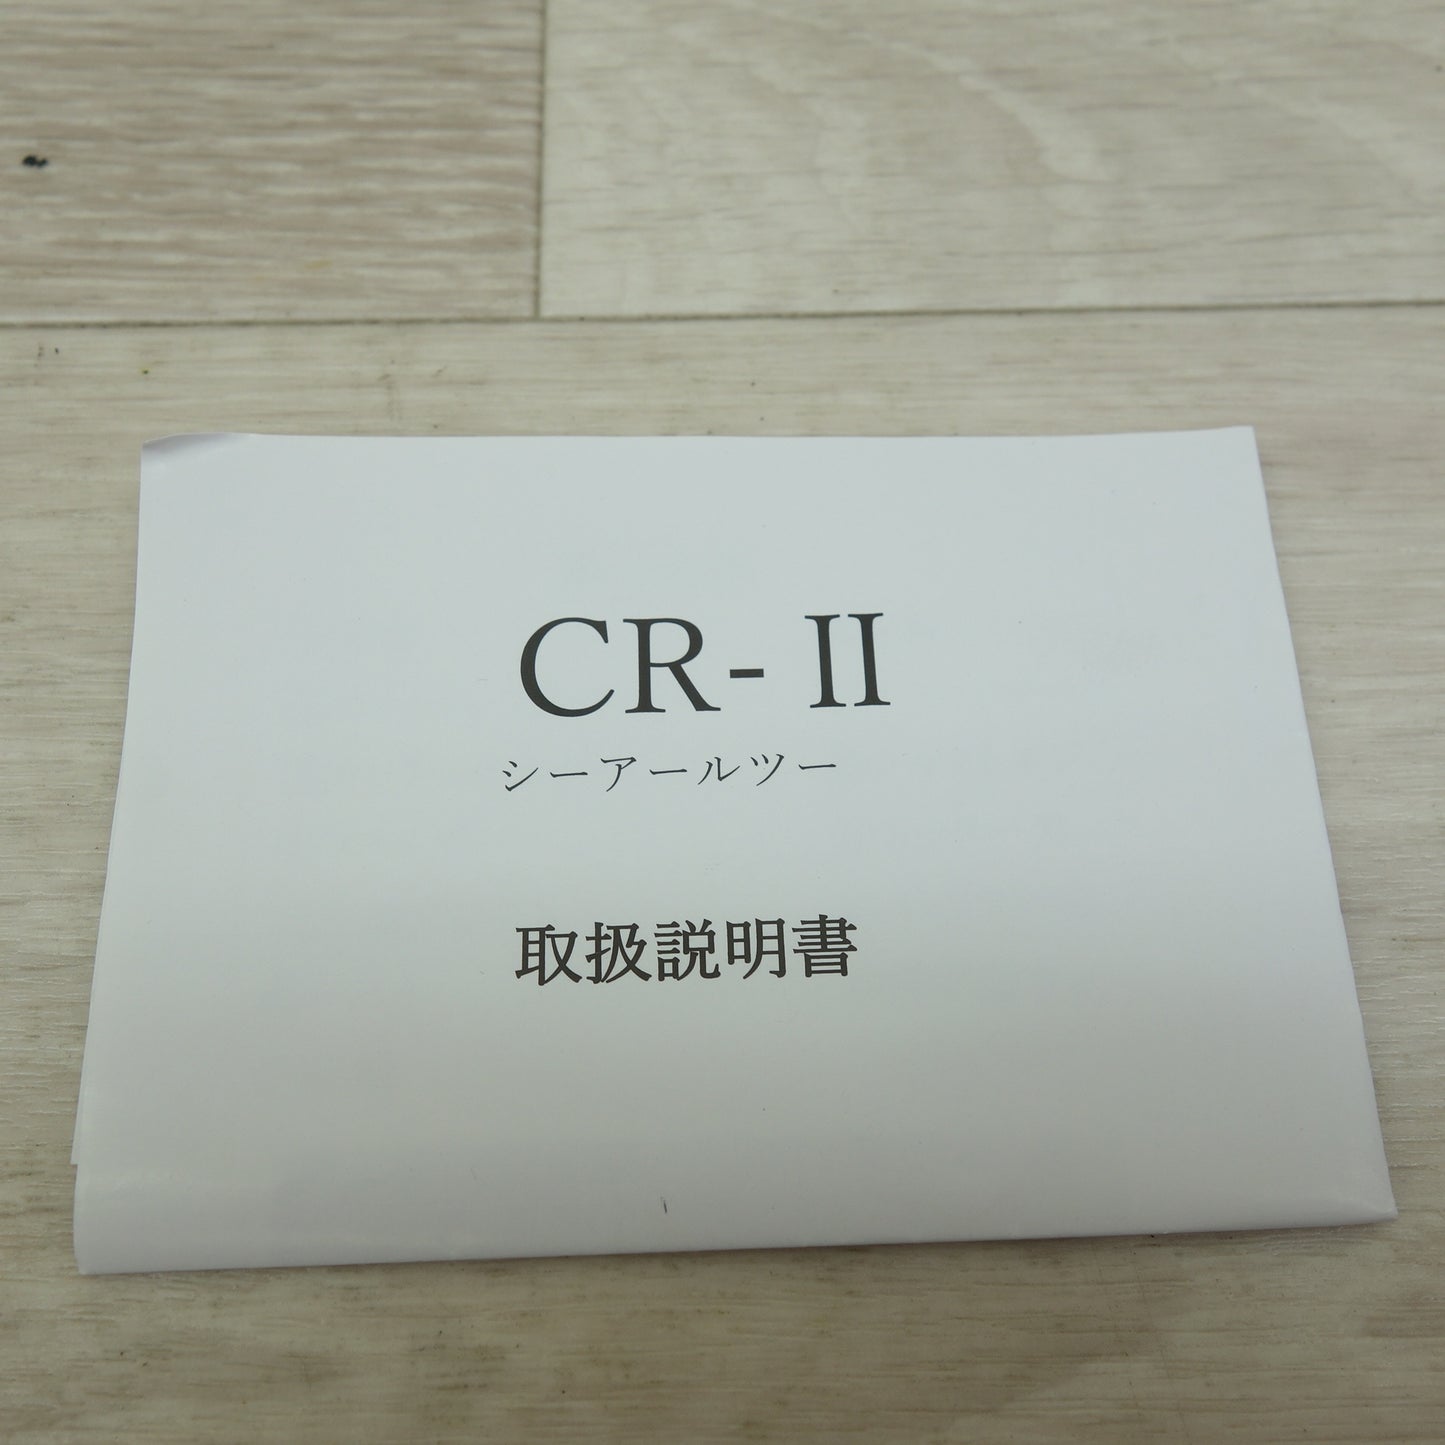 [送料無料] 未使用☆KYOKUTO コーナーカッター CR-Ⅱ CR-2 切断機 極東☆